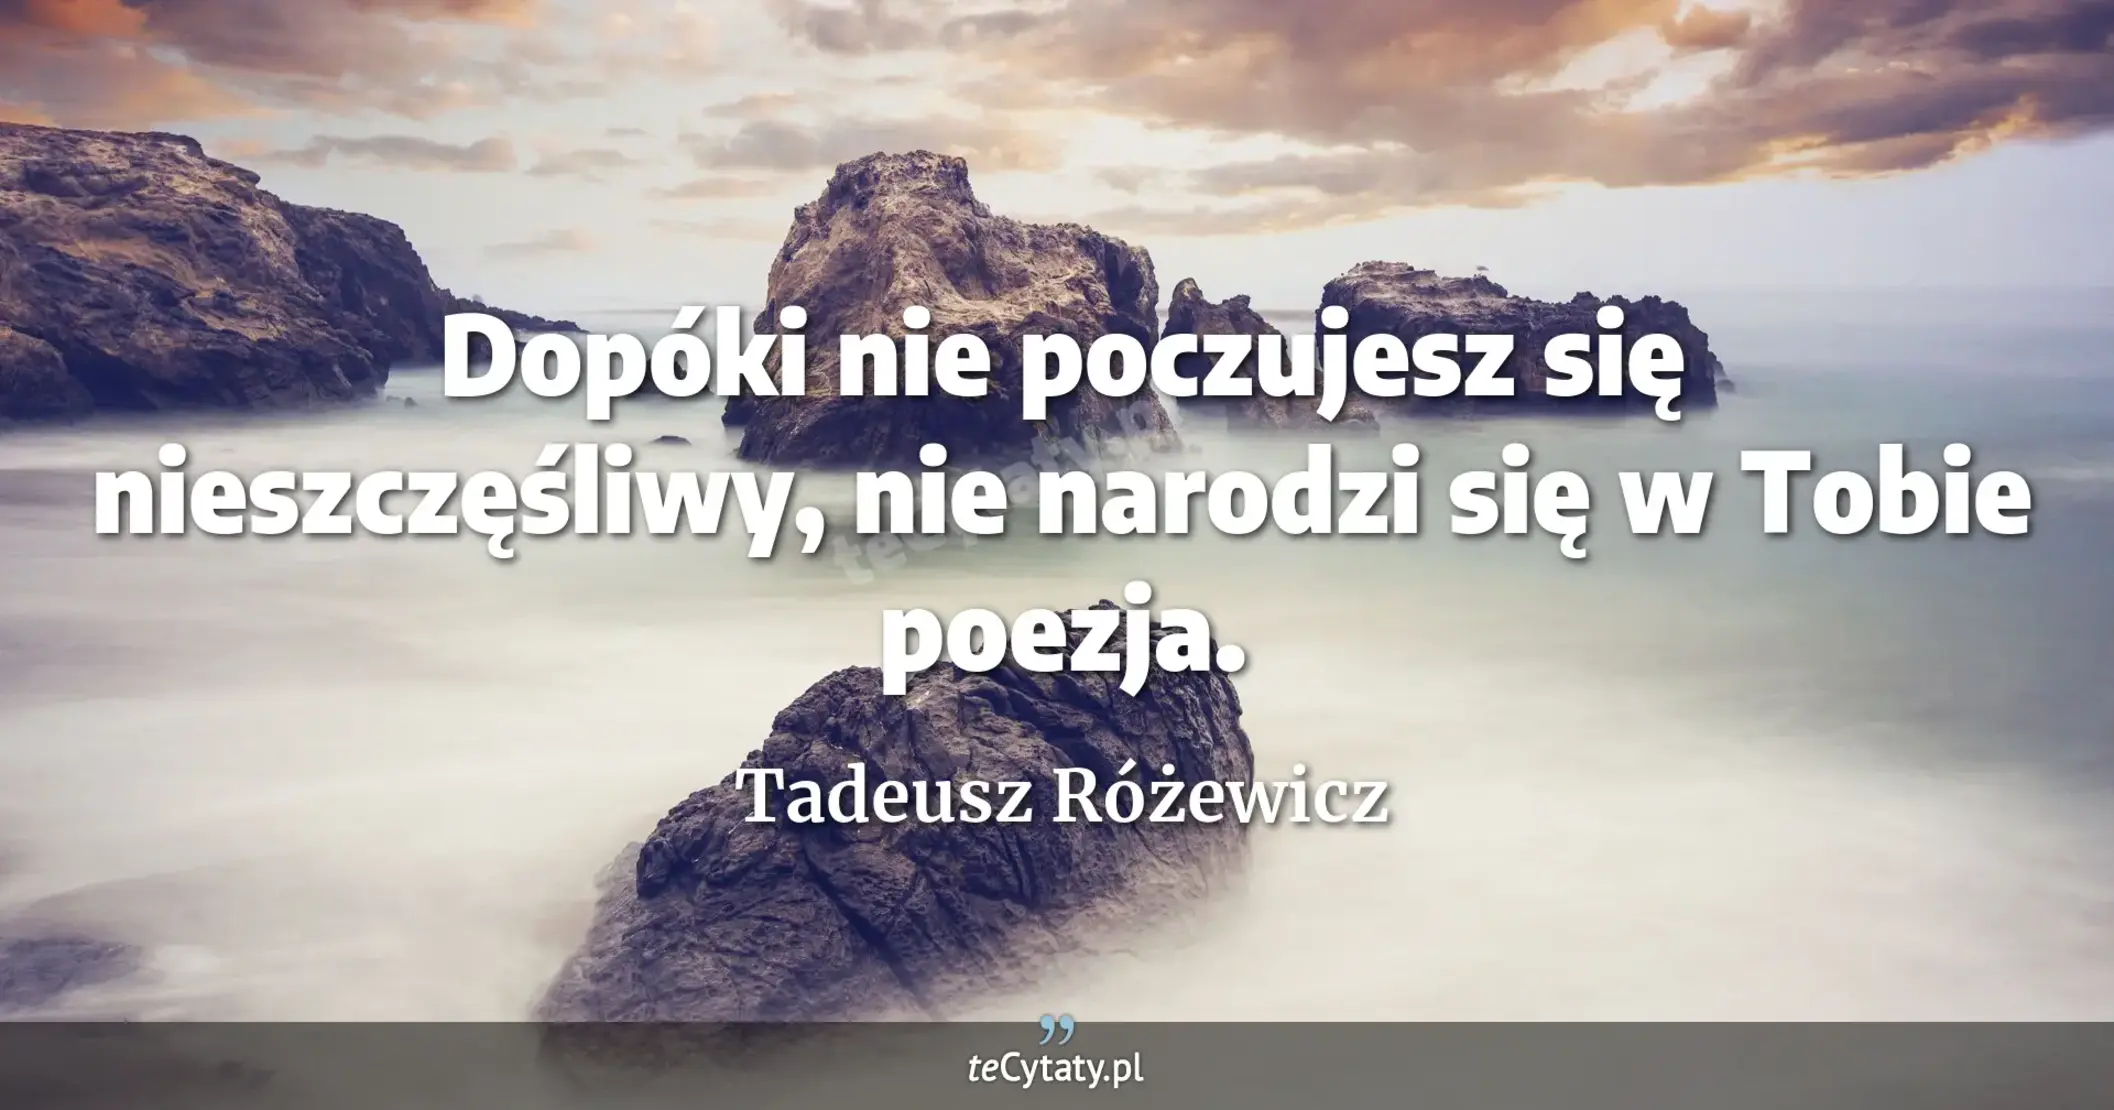 Dopóki nie poczujesz się nieszczęśliwy, nie narodzi się w Tobie poezja. - Tadeusz Różewicz